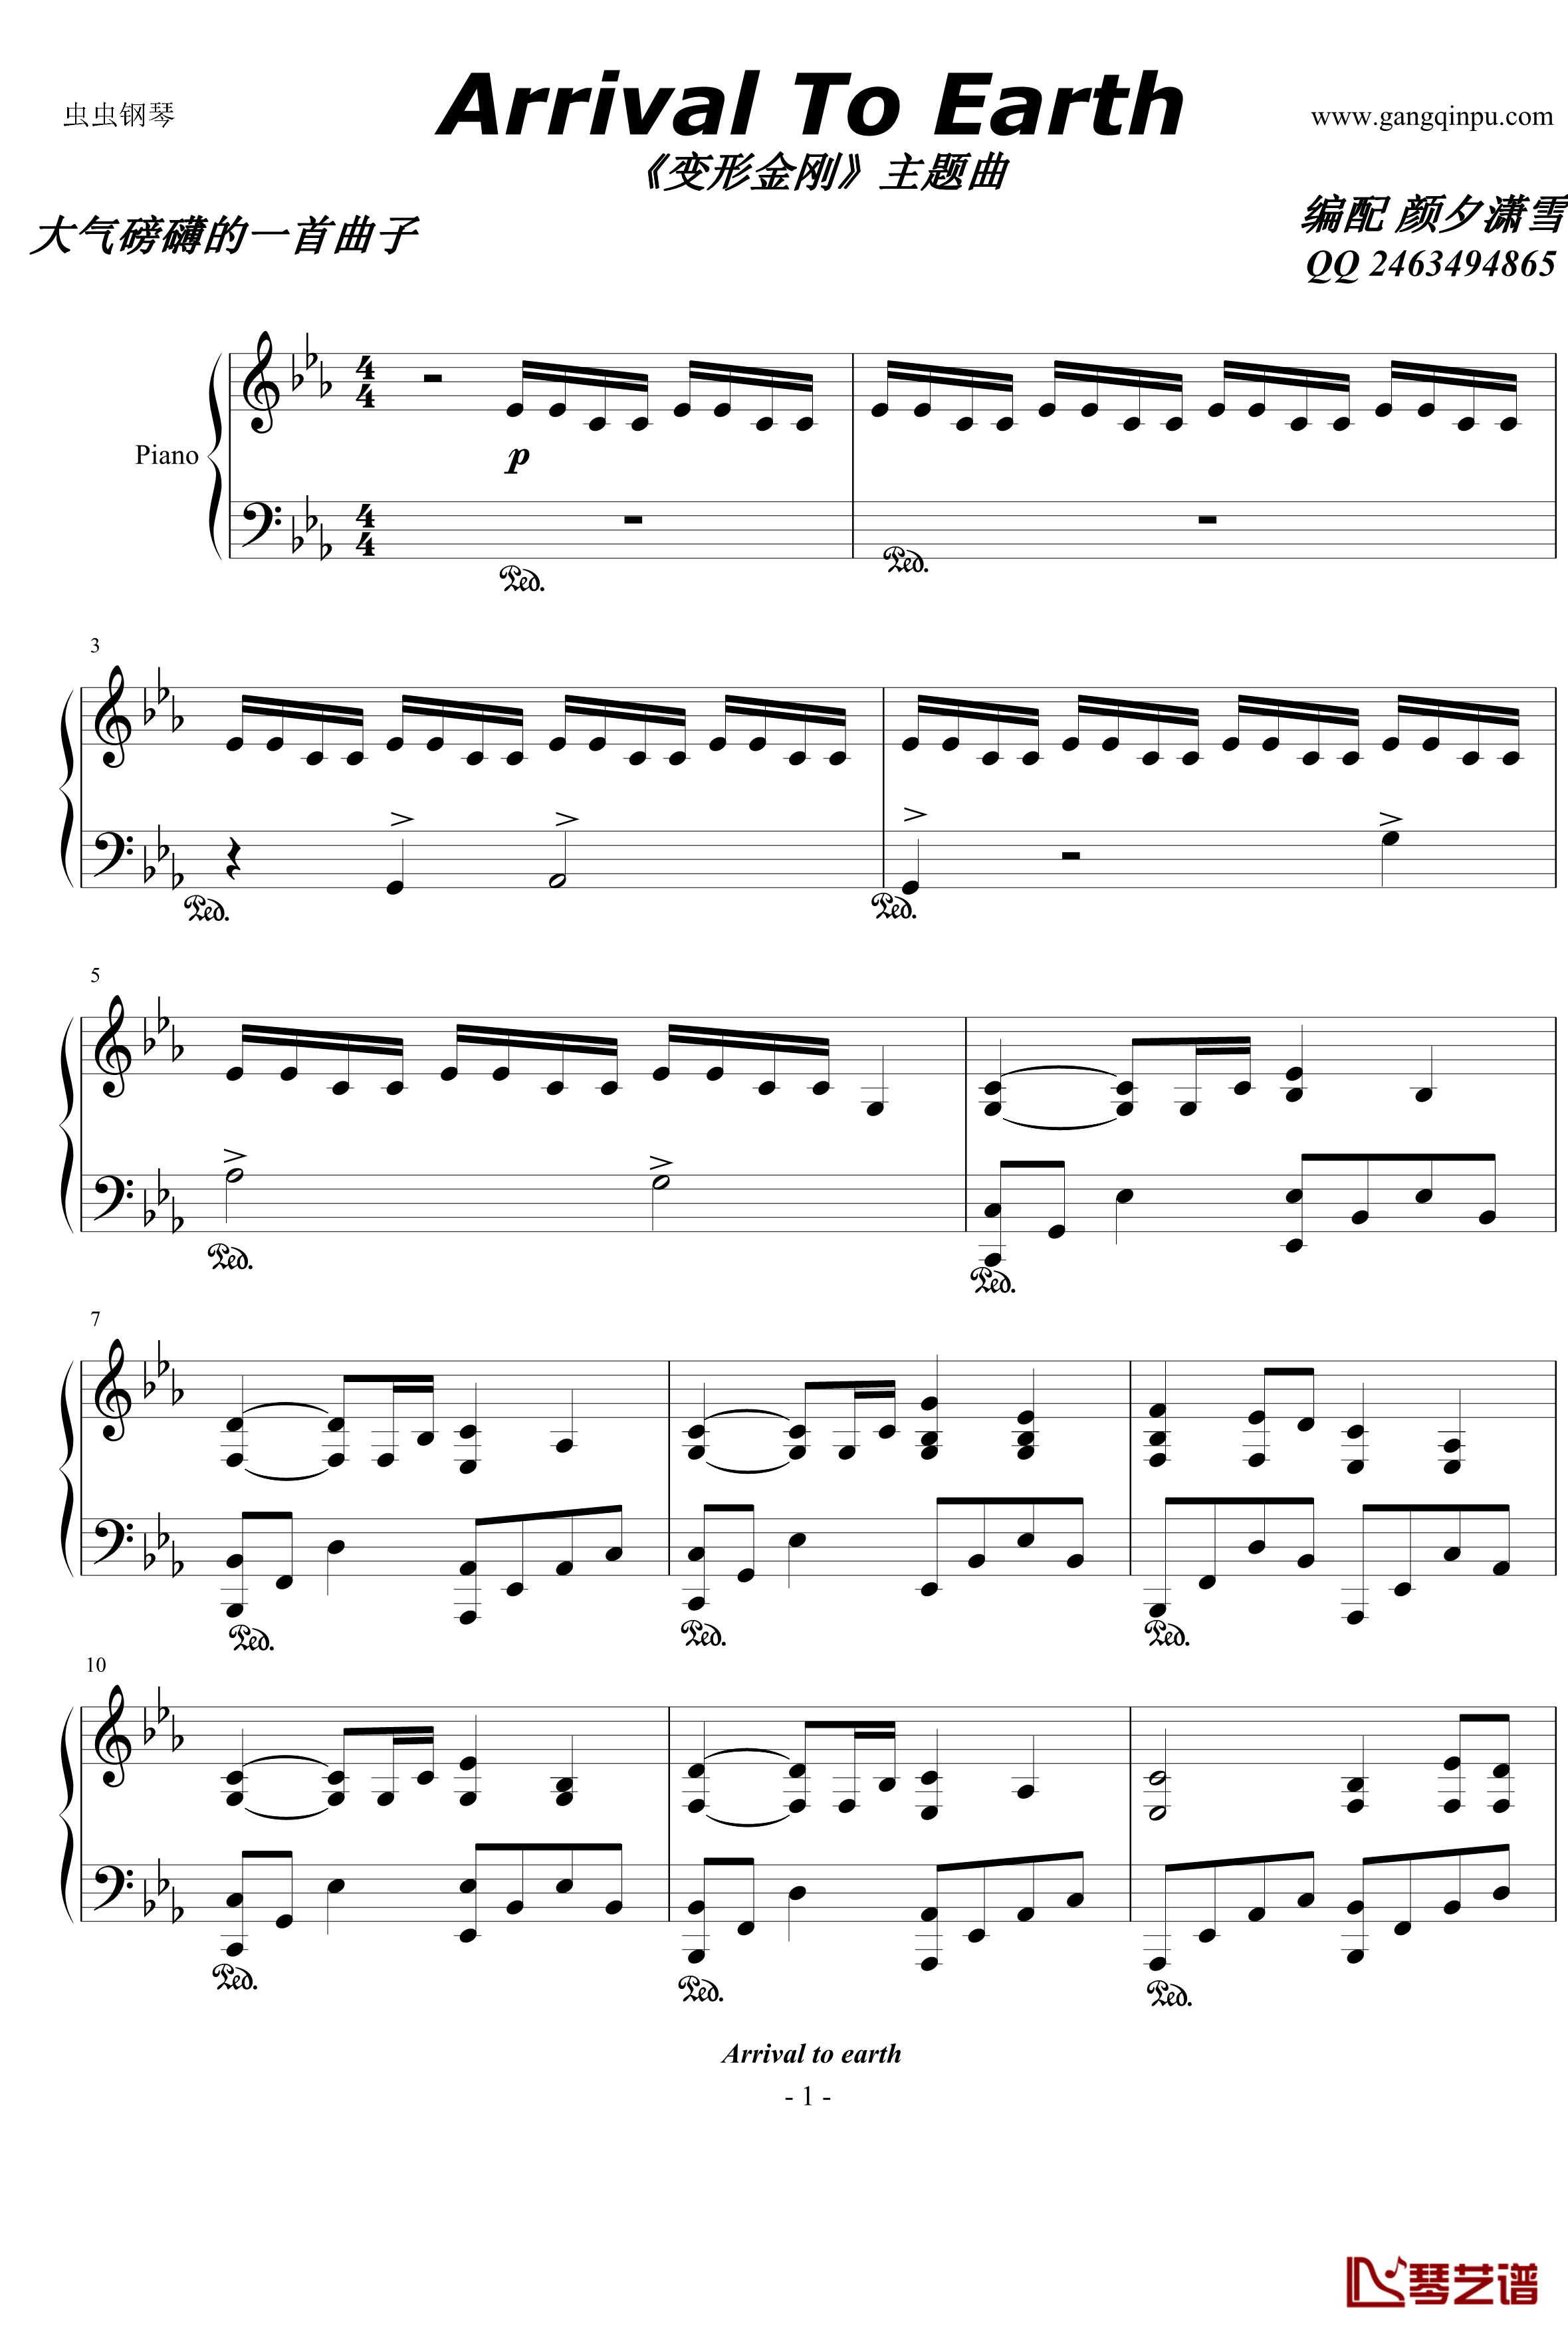 变形金刚钢琴谱1